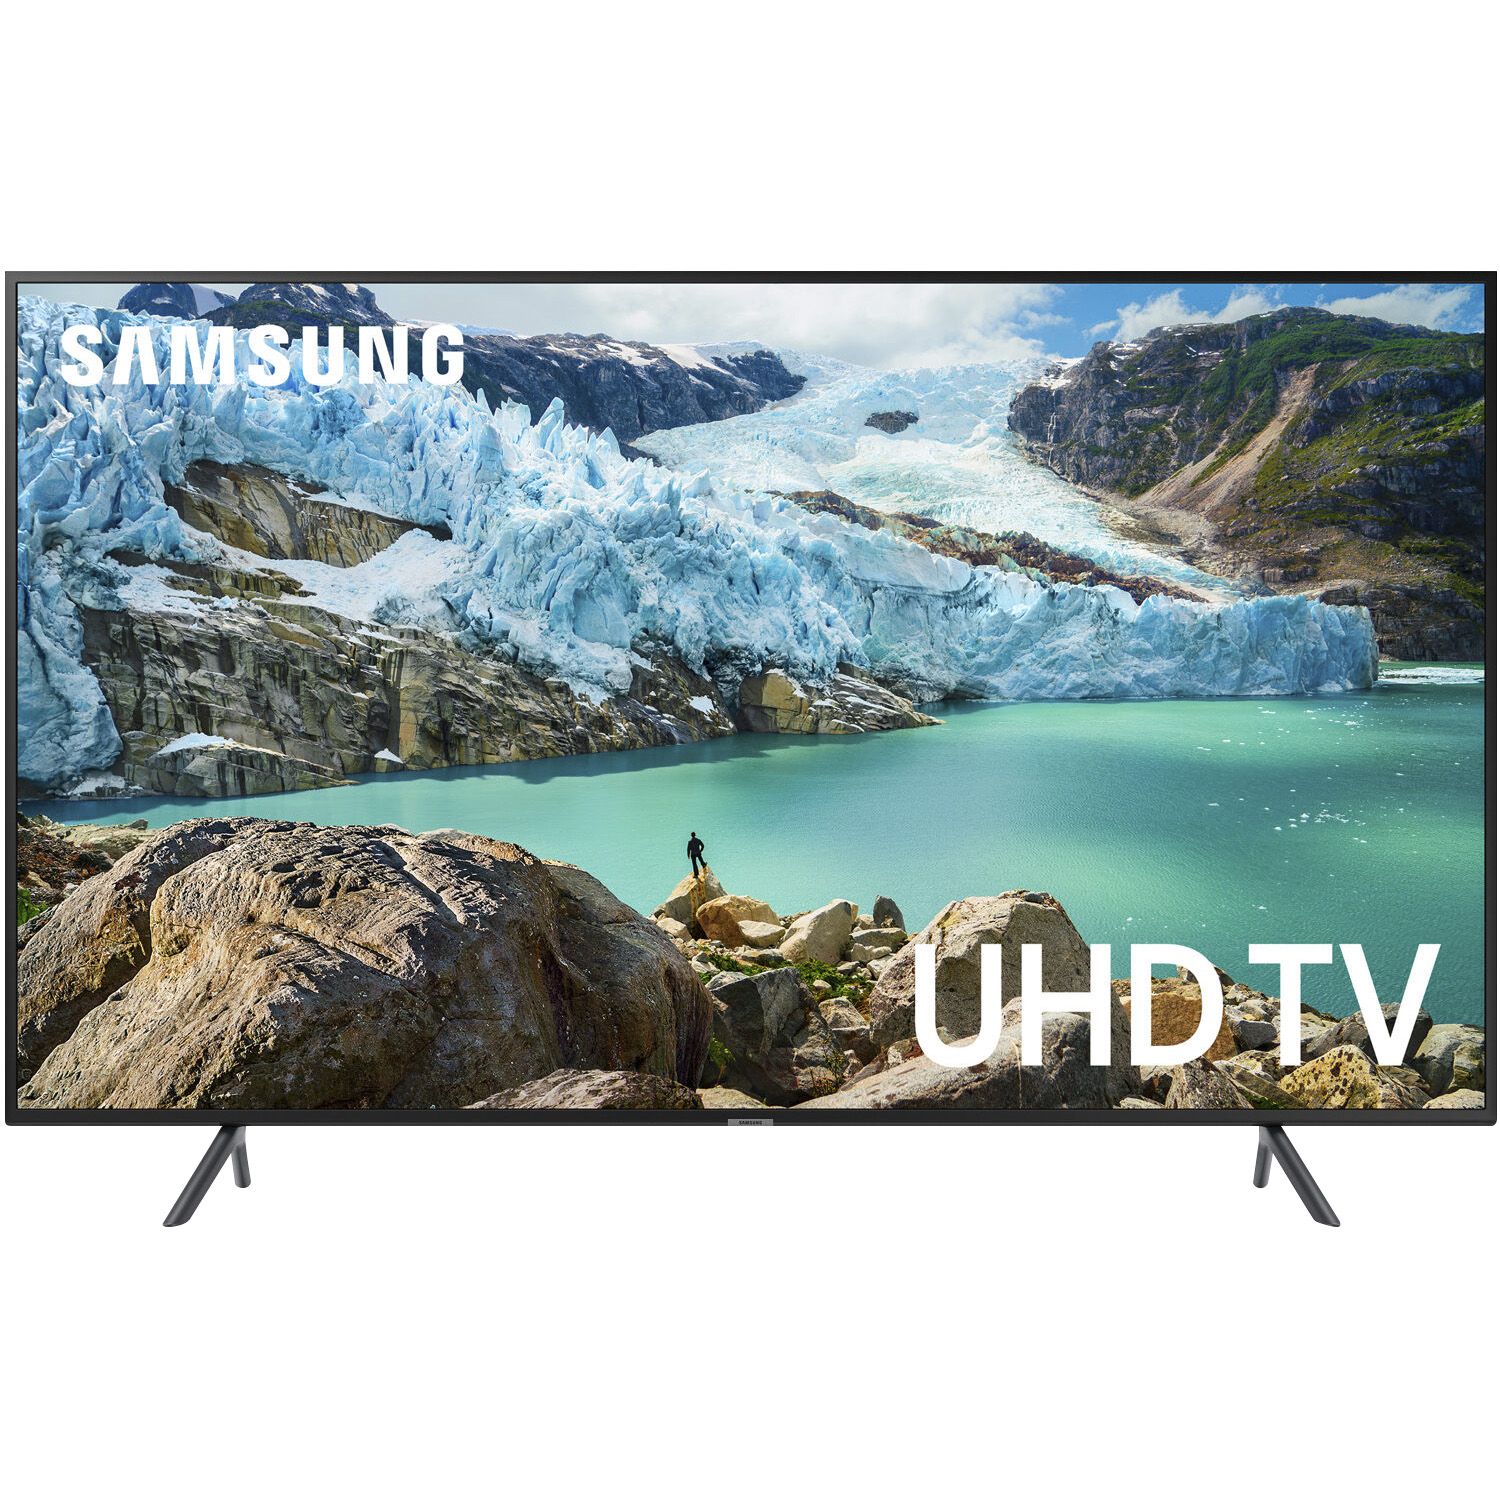 Smart TV portátil Samsung Series 4 UN32T4300AGXUG LED Tizen HD 32  100V/240V